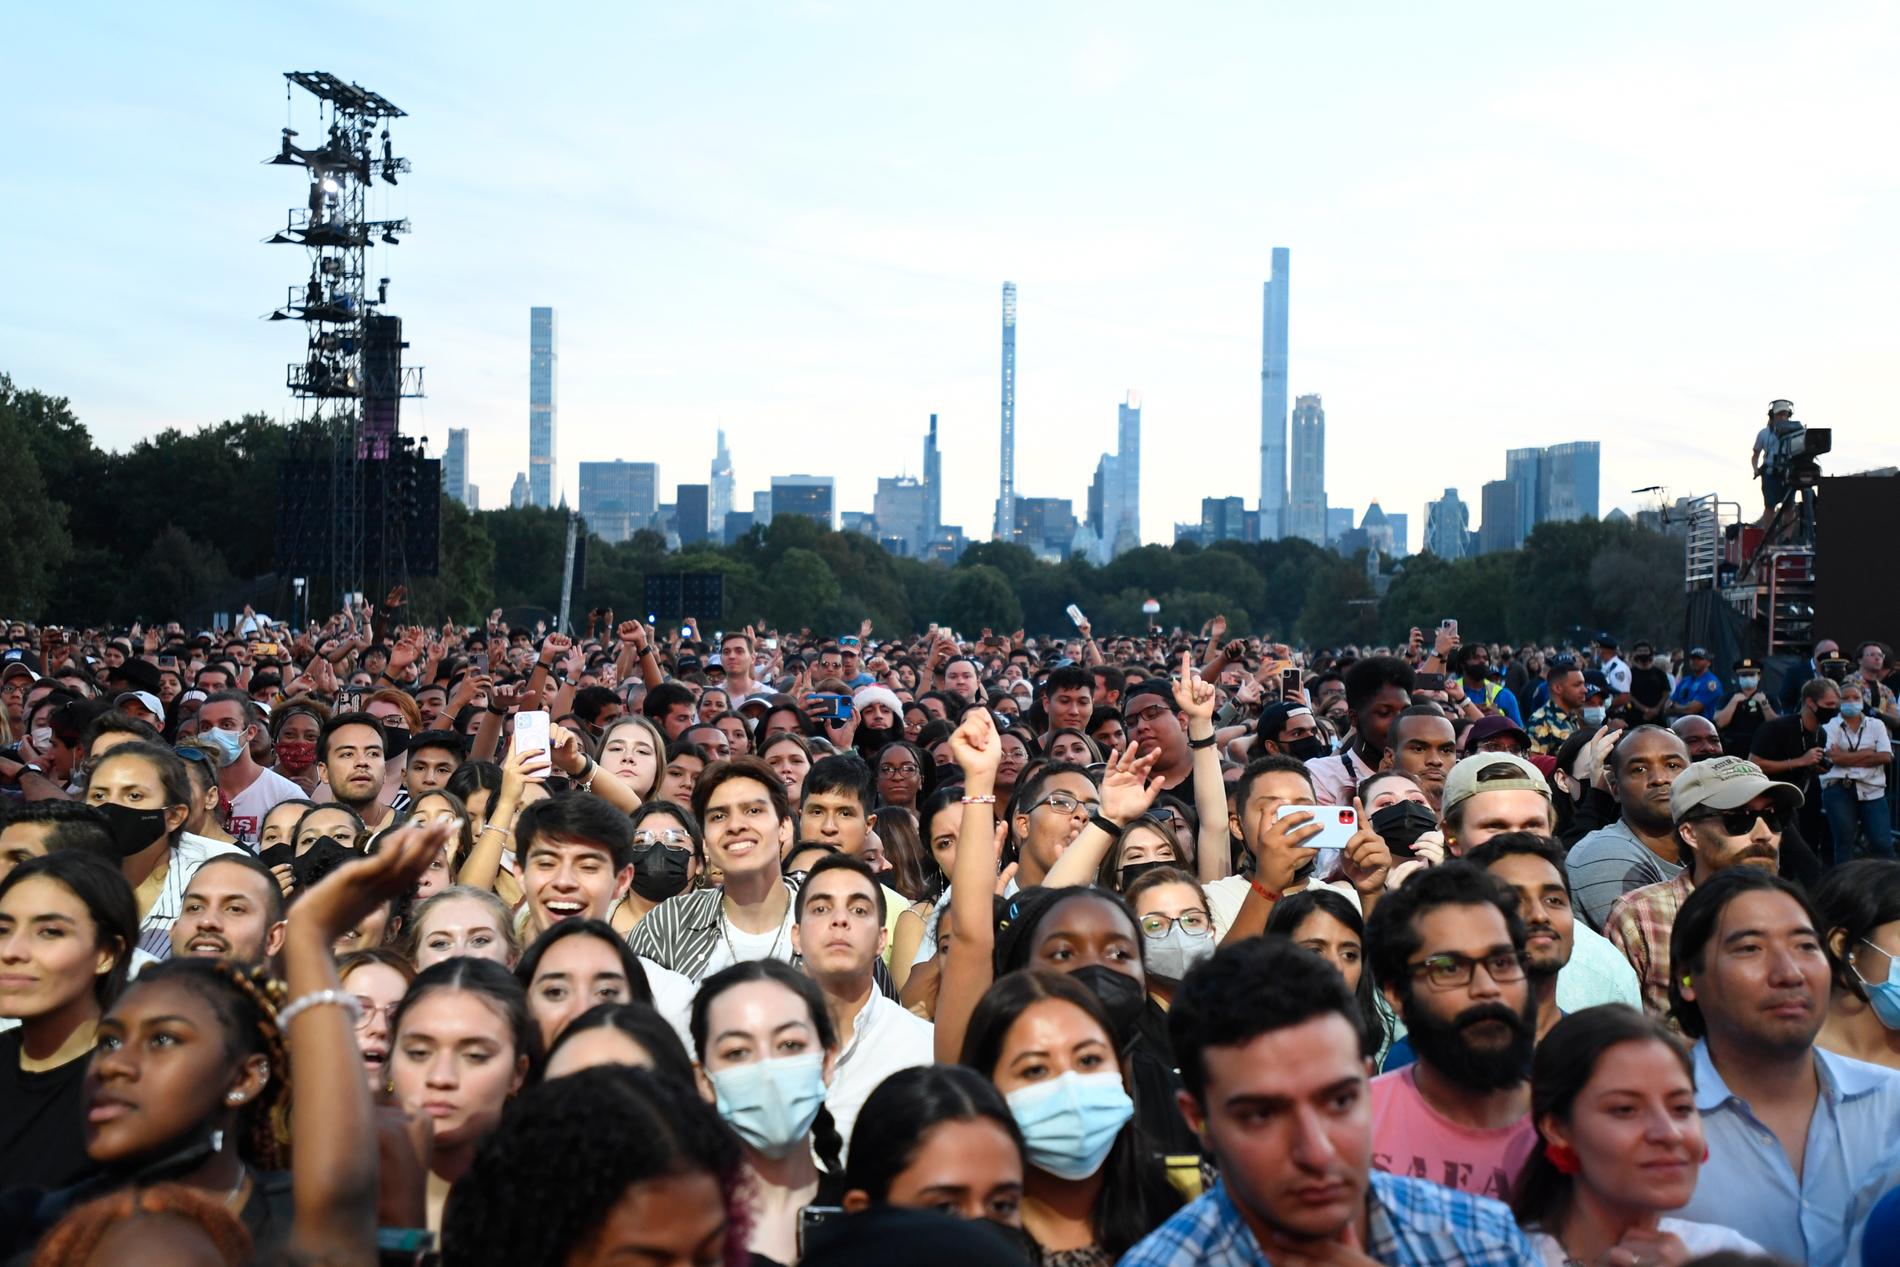 En relativt stor publik samlades i Central Park.